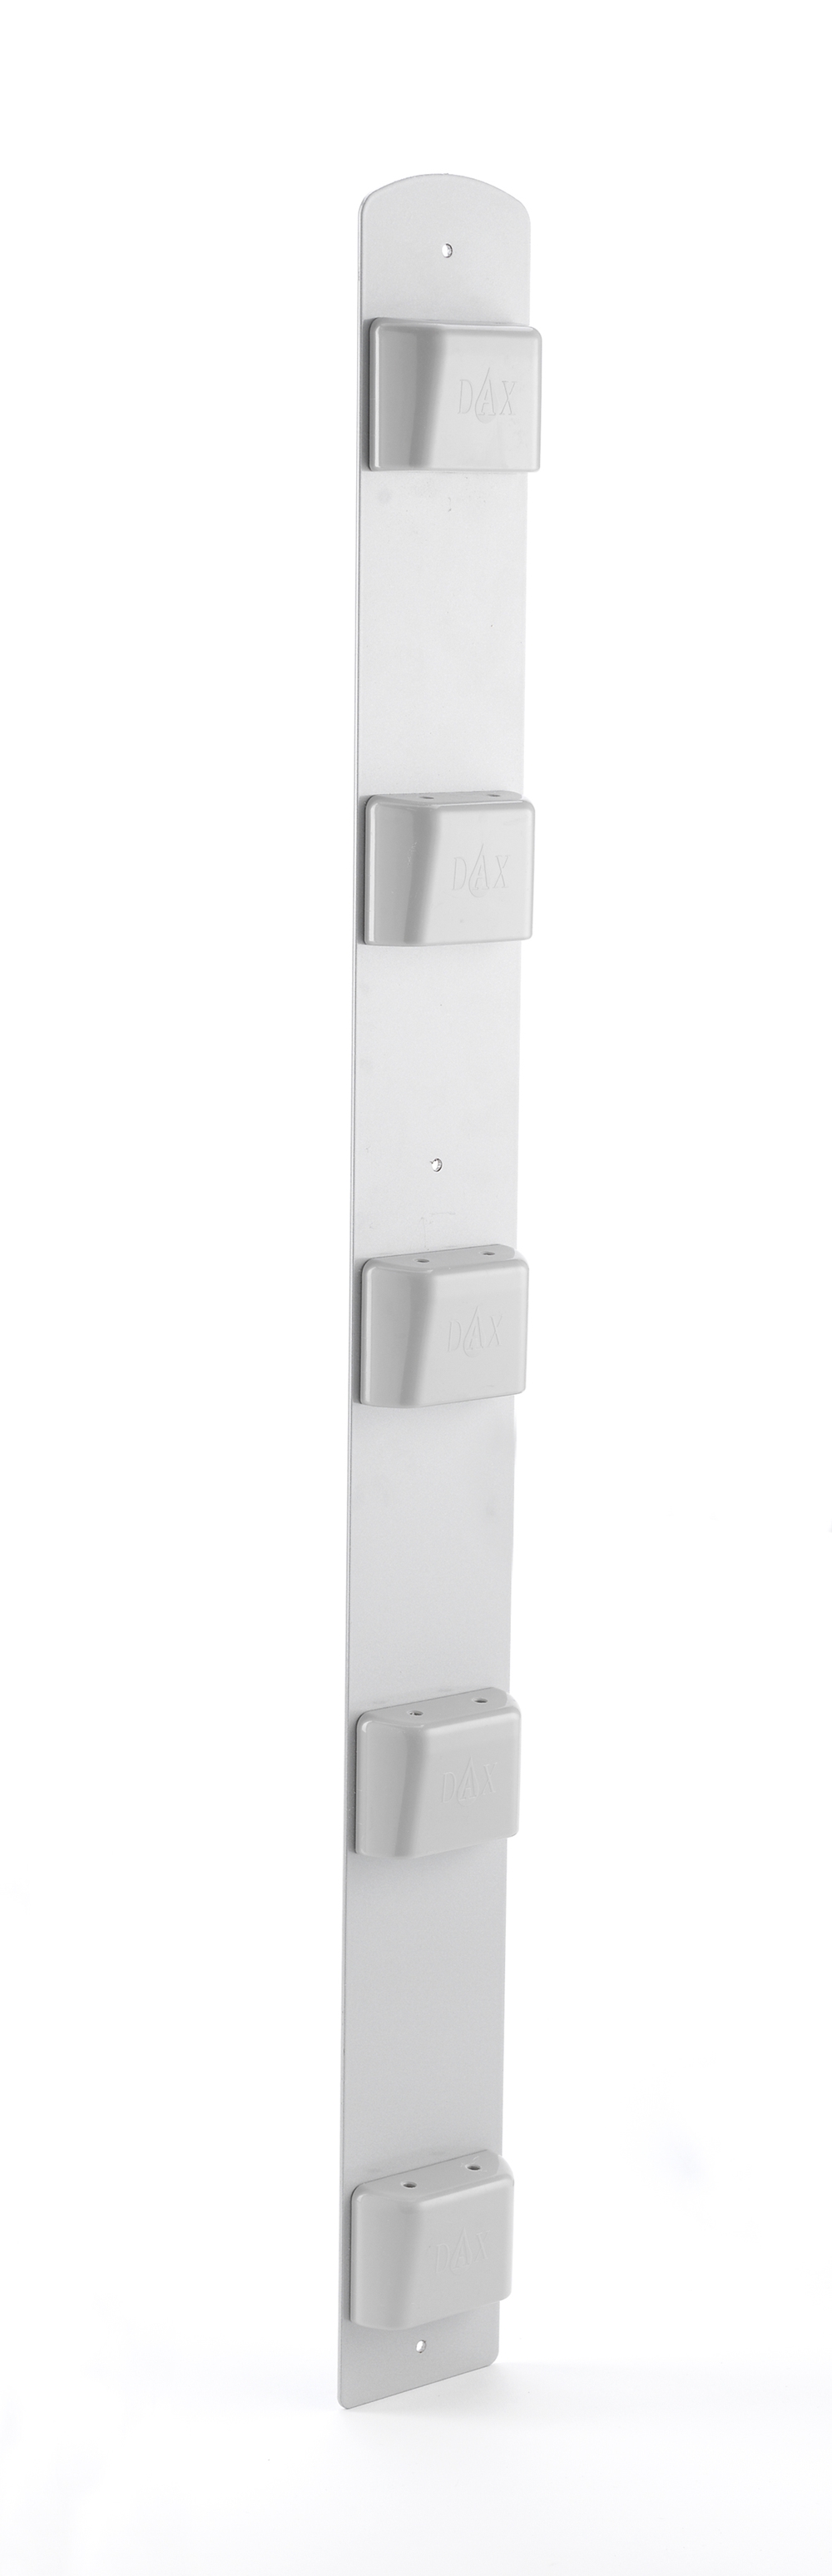 Dispenser hygienskena till vägg exklusive dispenser - lodrät 5 hållare exkl disp